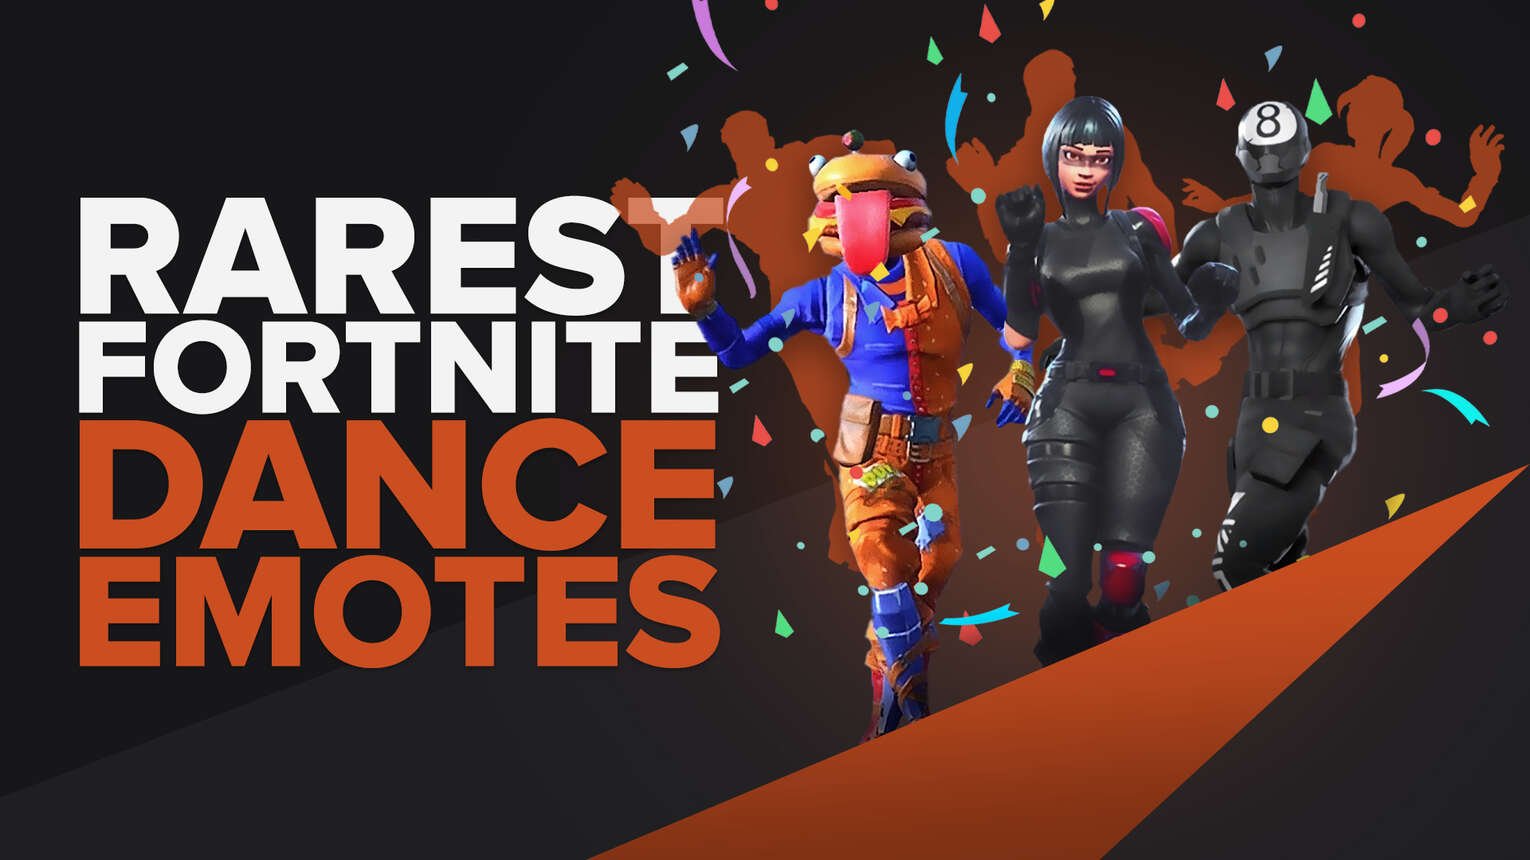 These Fortnite Dance Emotes Are Super Rare!